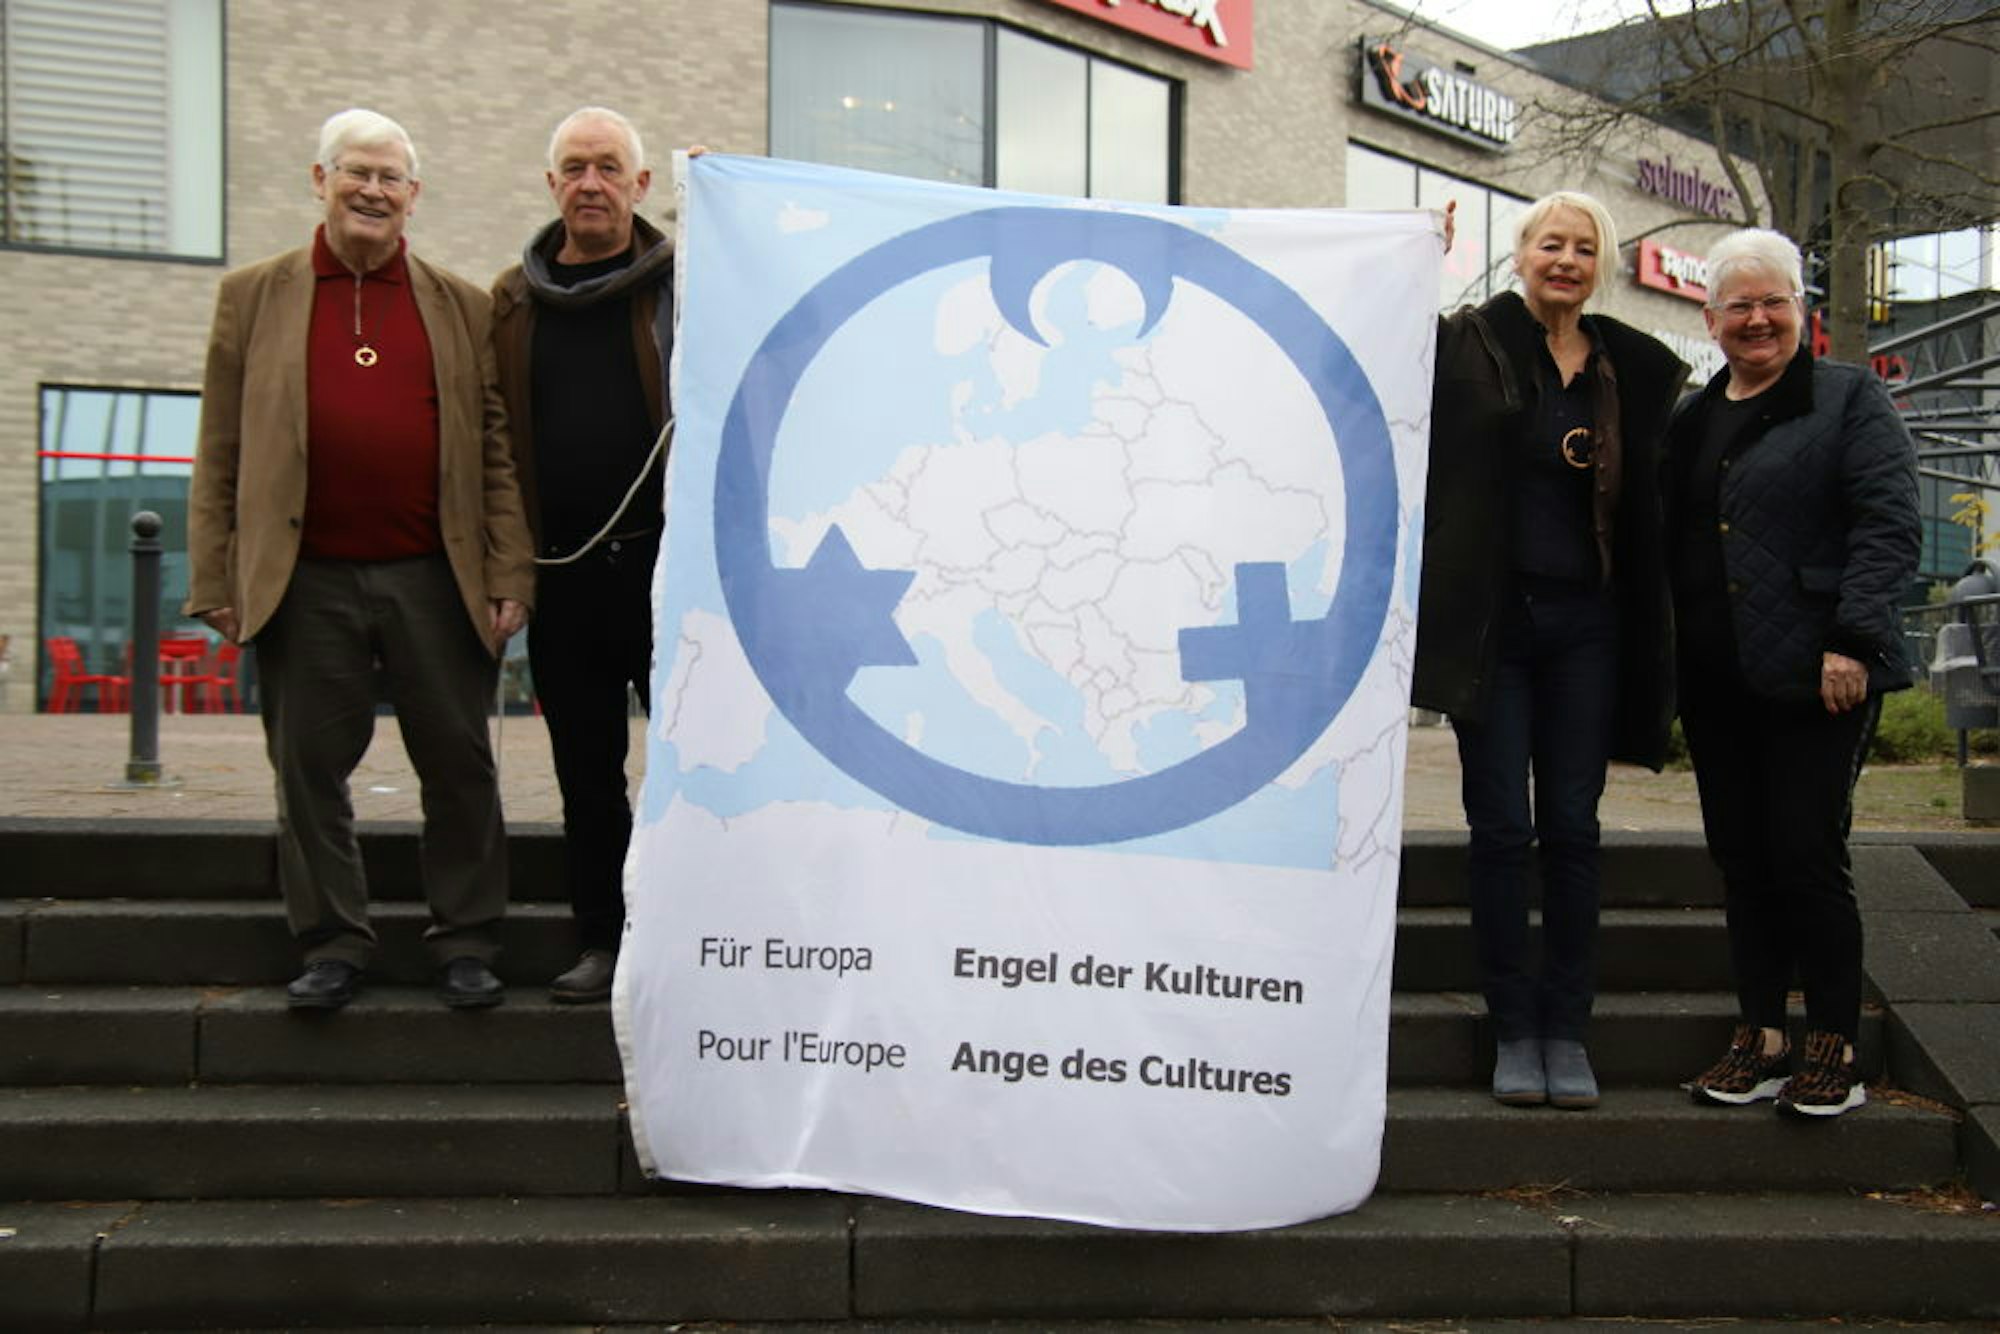 Rechts: Gregor Schröder, Gregor Merten, Carmen Dietrich und Helene Hammelrath (v.l.) mit dem Banner der „Engel der Kulturen“.